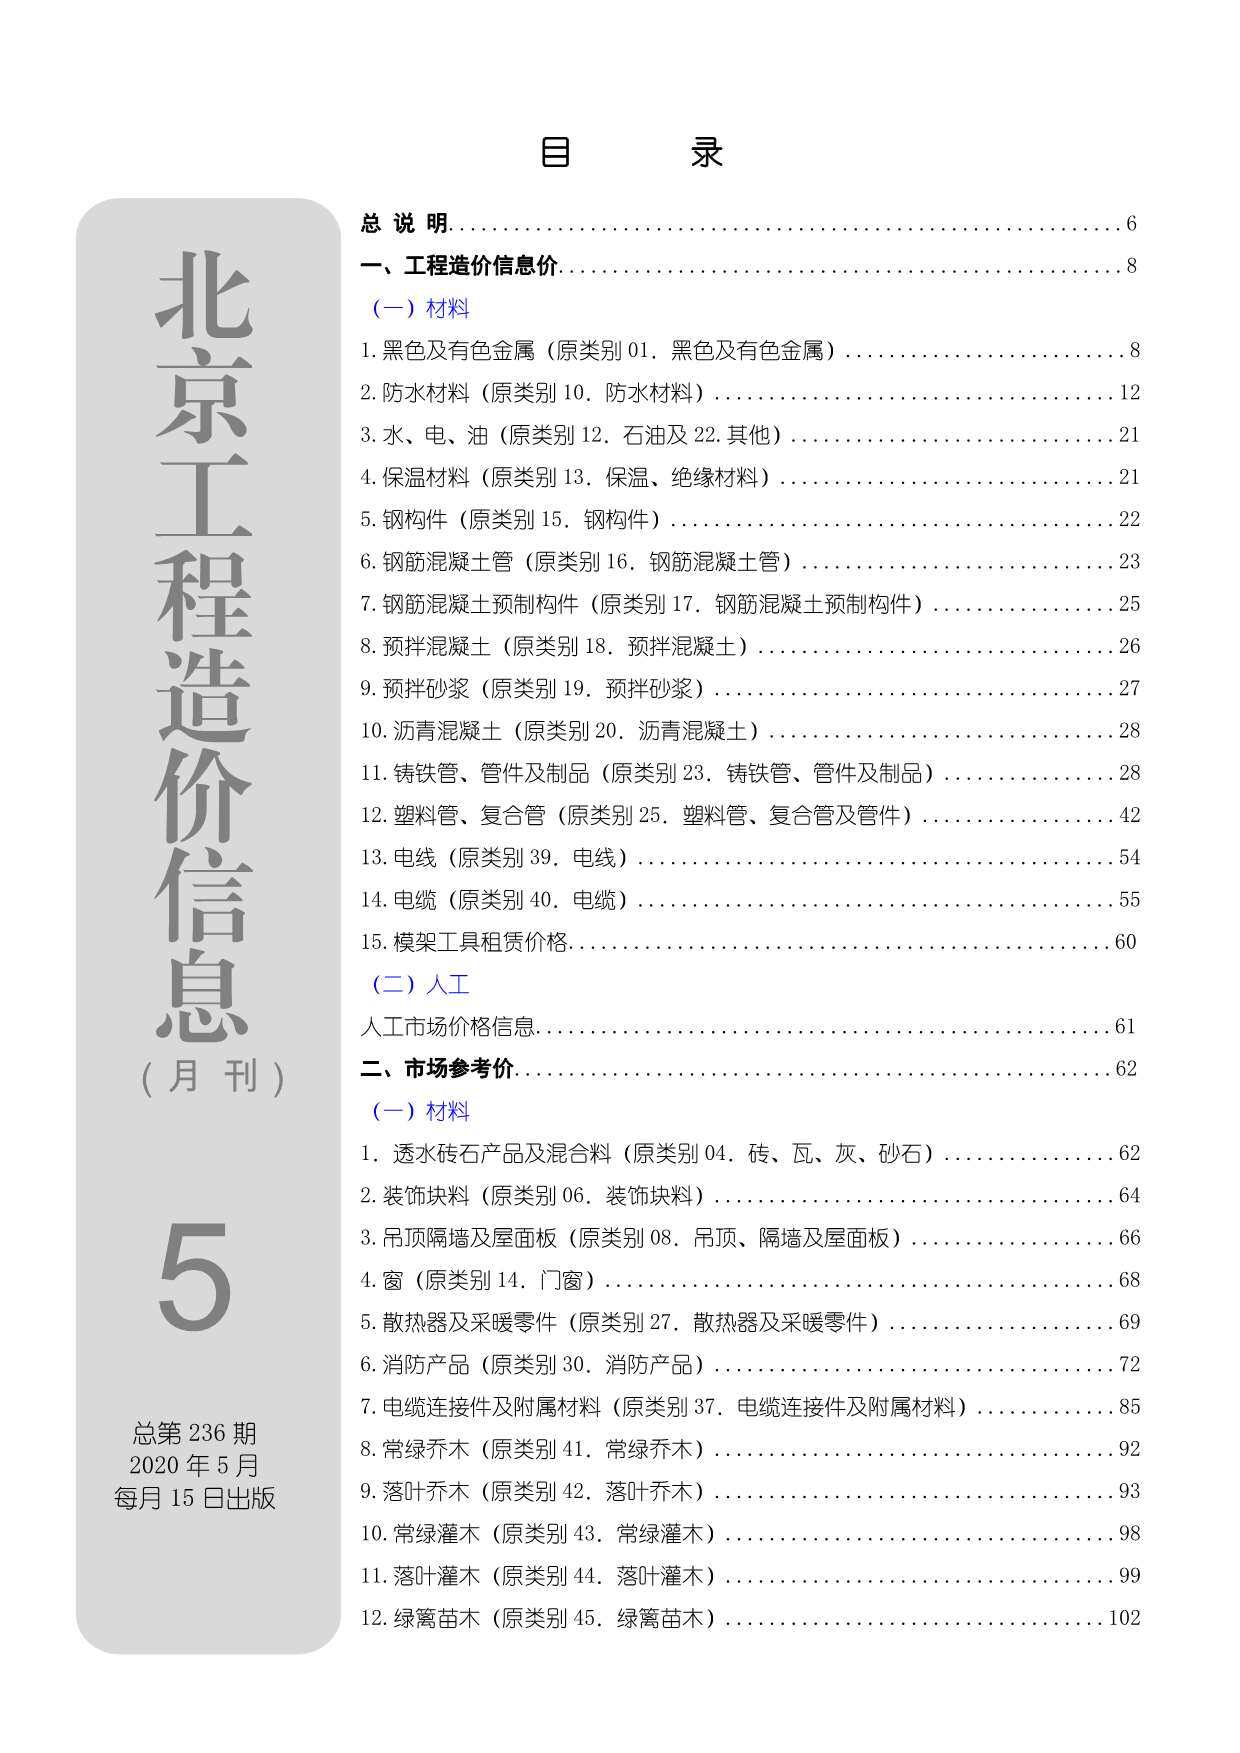 北京市2020年5月工程造价信息期刊